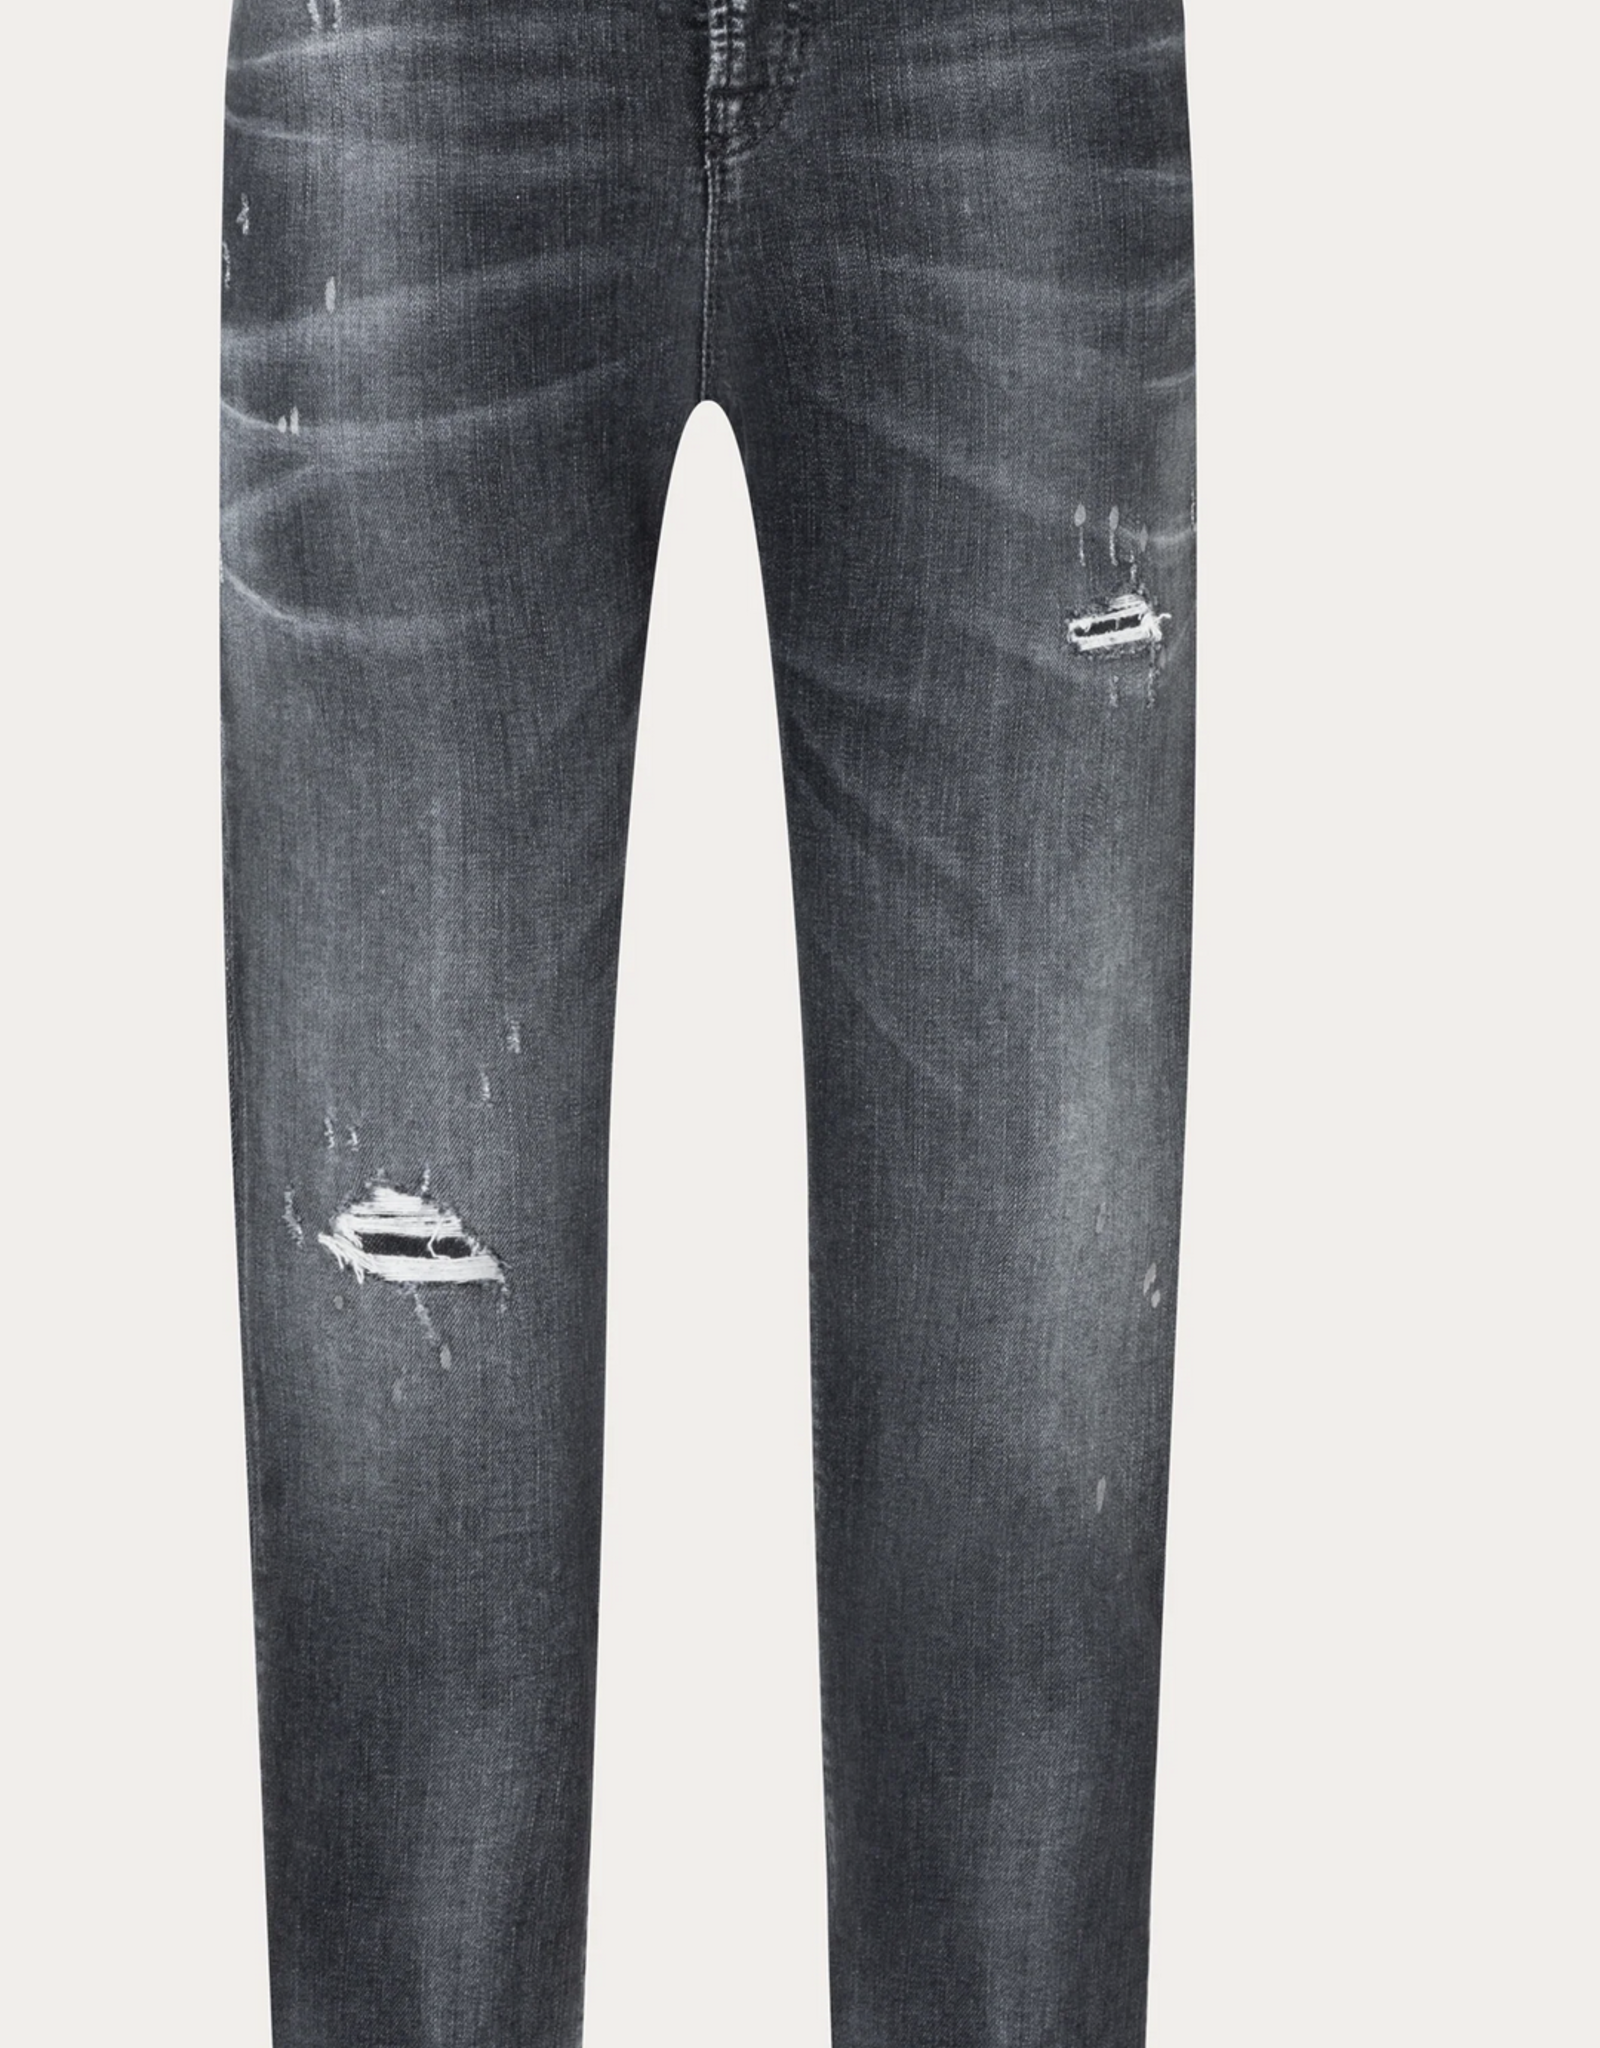 Cambio Cambio KERRY Cuff Jeans